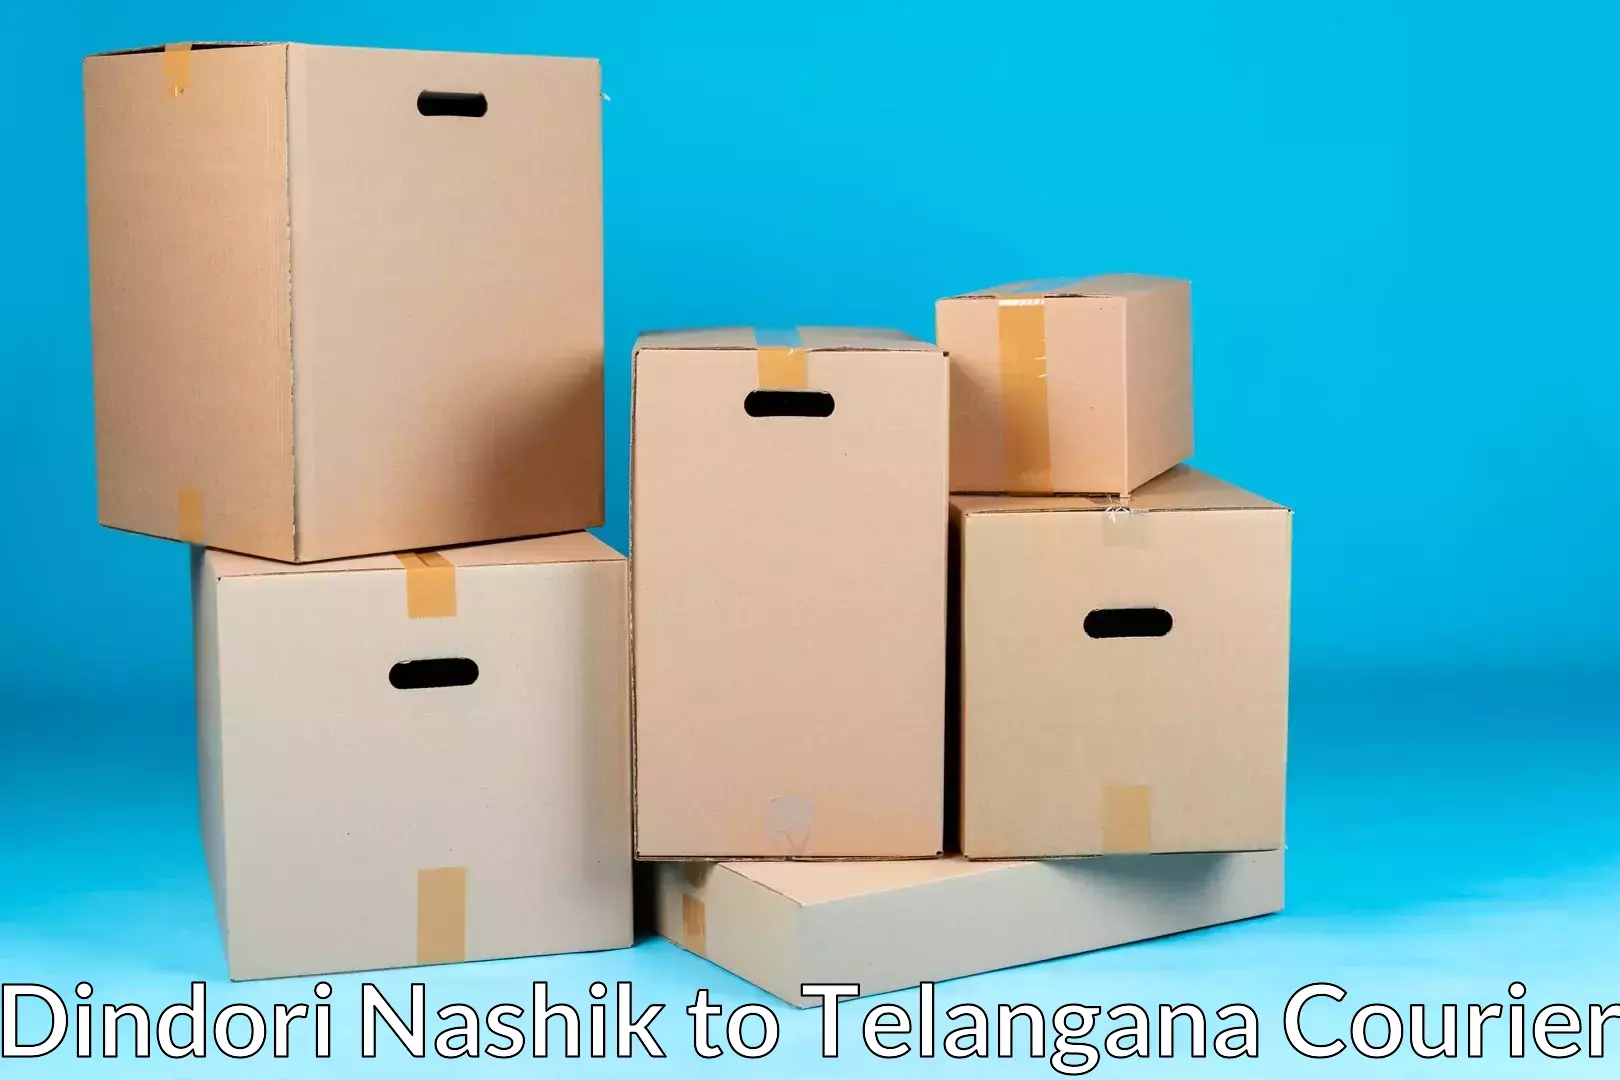 Efficient moving and packing Dindori Nashik to Nizamabad